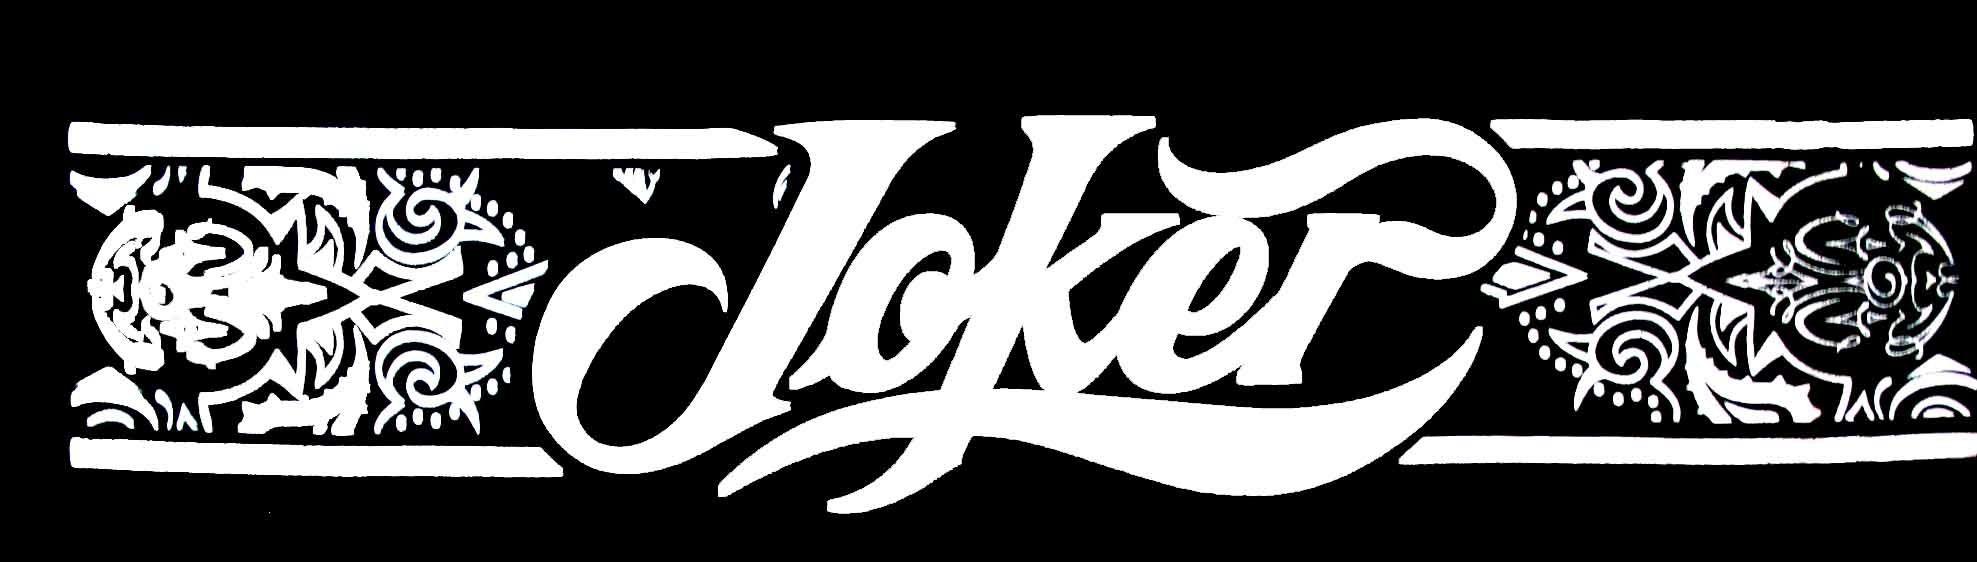 Joker Brand Logo Wallpaper